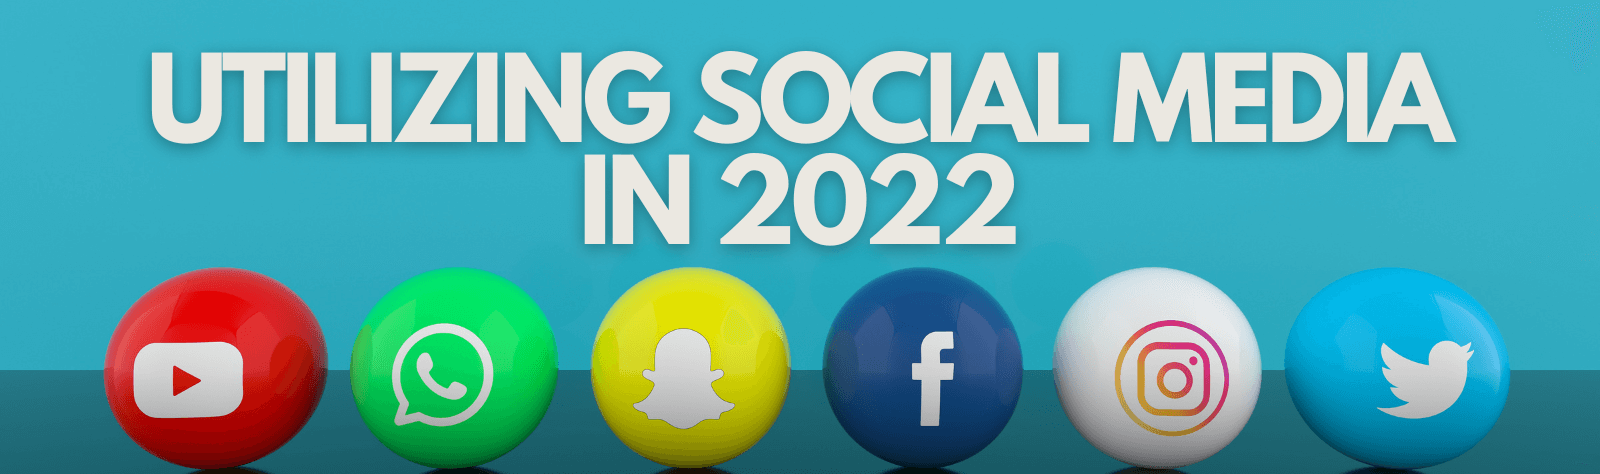 UTILIZING SOCIAL MEDIA IN 2022 (1)